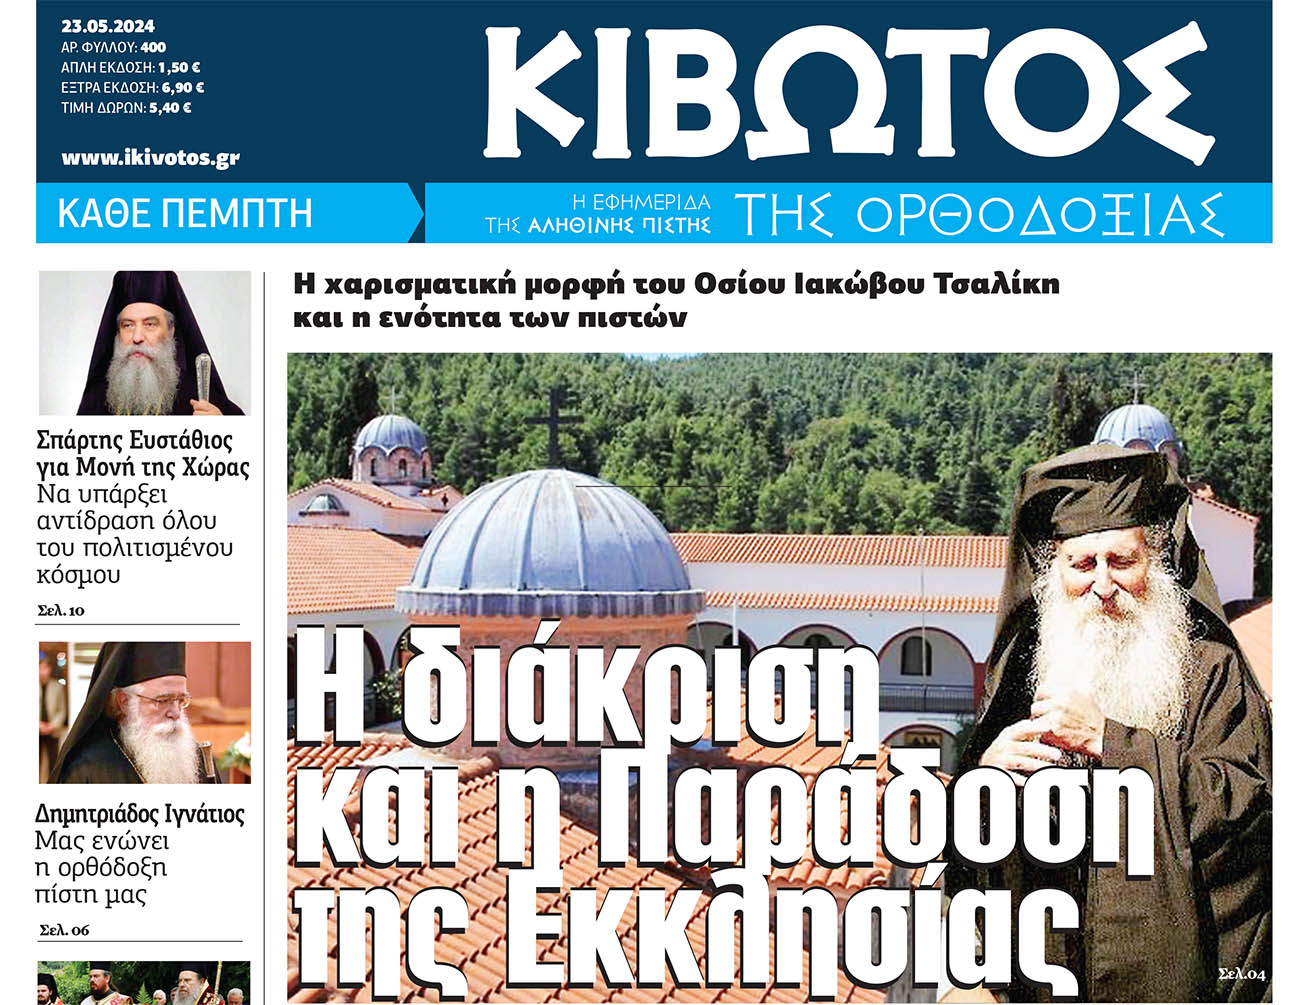 Από την Πέμπτη, 23 Μαΐου, κυκλοφορεί το νέο φύλλο της Εφημερίδας «Κιβωτός της Ορθοδοξίας»